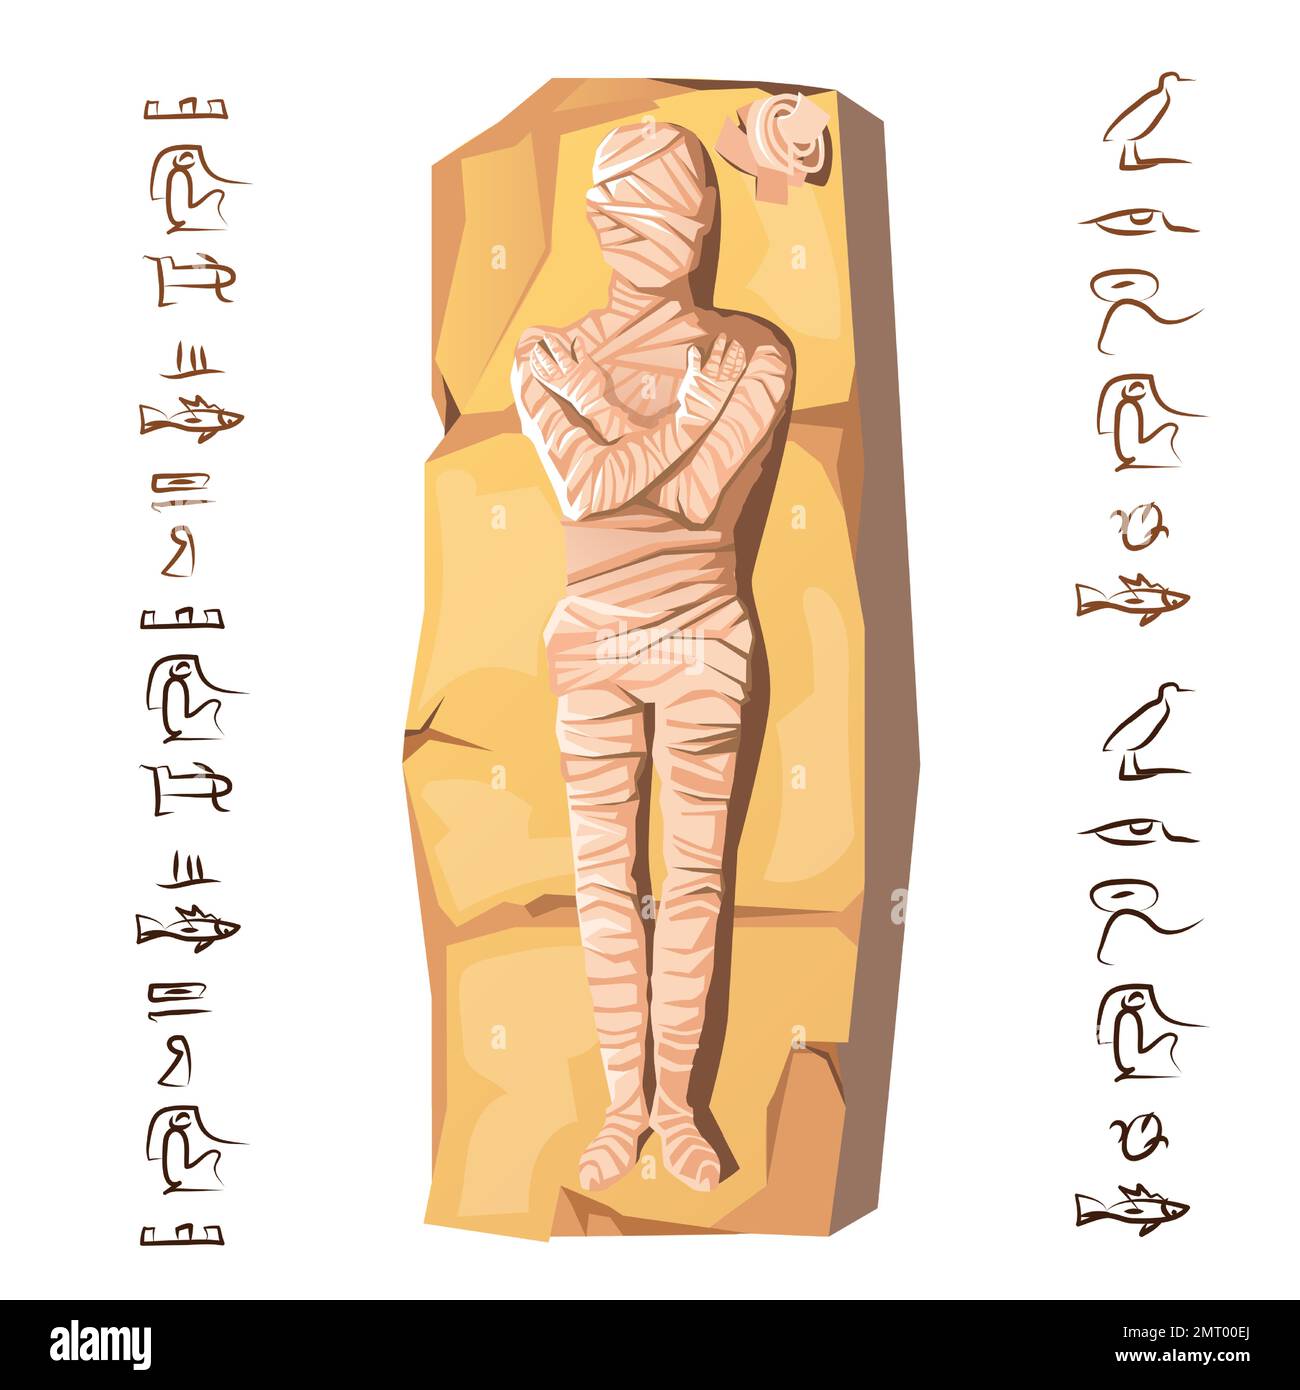 Mummy Creation Cartoon-Vektordarstellung. Mumifizierungsprozess, Einbalsamierung von Toten, menschliche Leiche ist mit Leinen umhüllt, liegt auf Stein, neben Hieroglyphen Kult von Toten aus dem alten Ägypten Stock Vektor